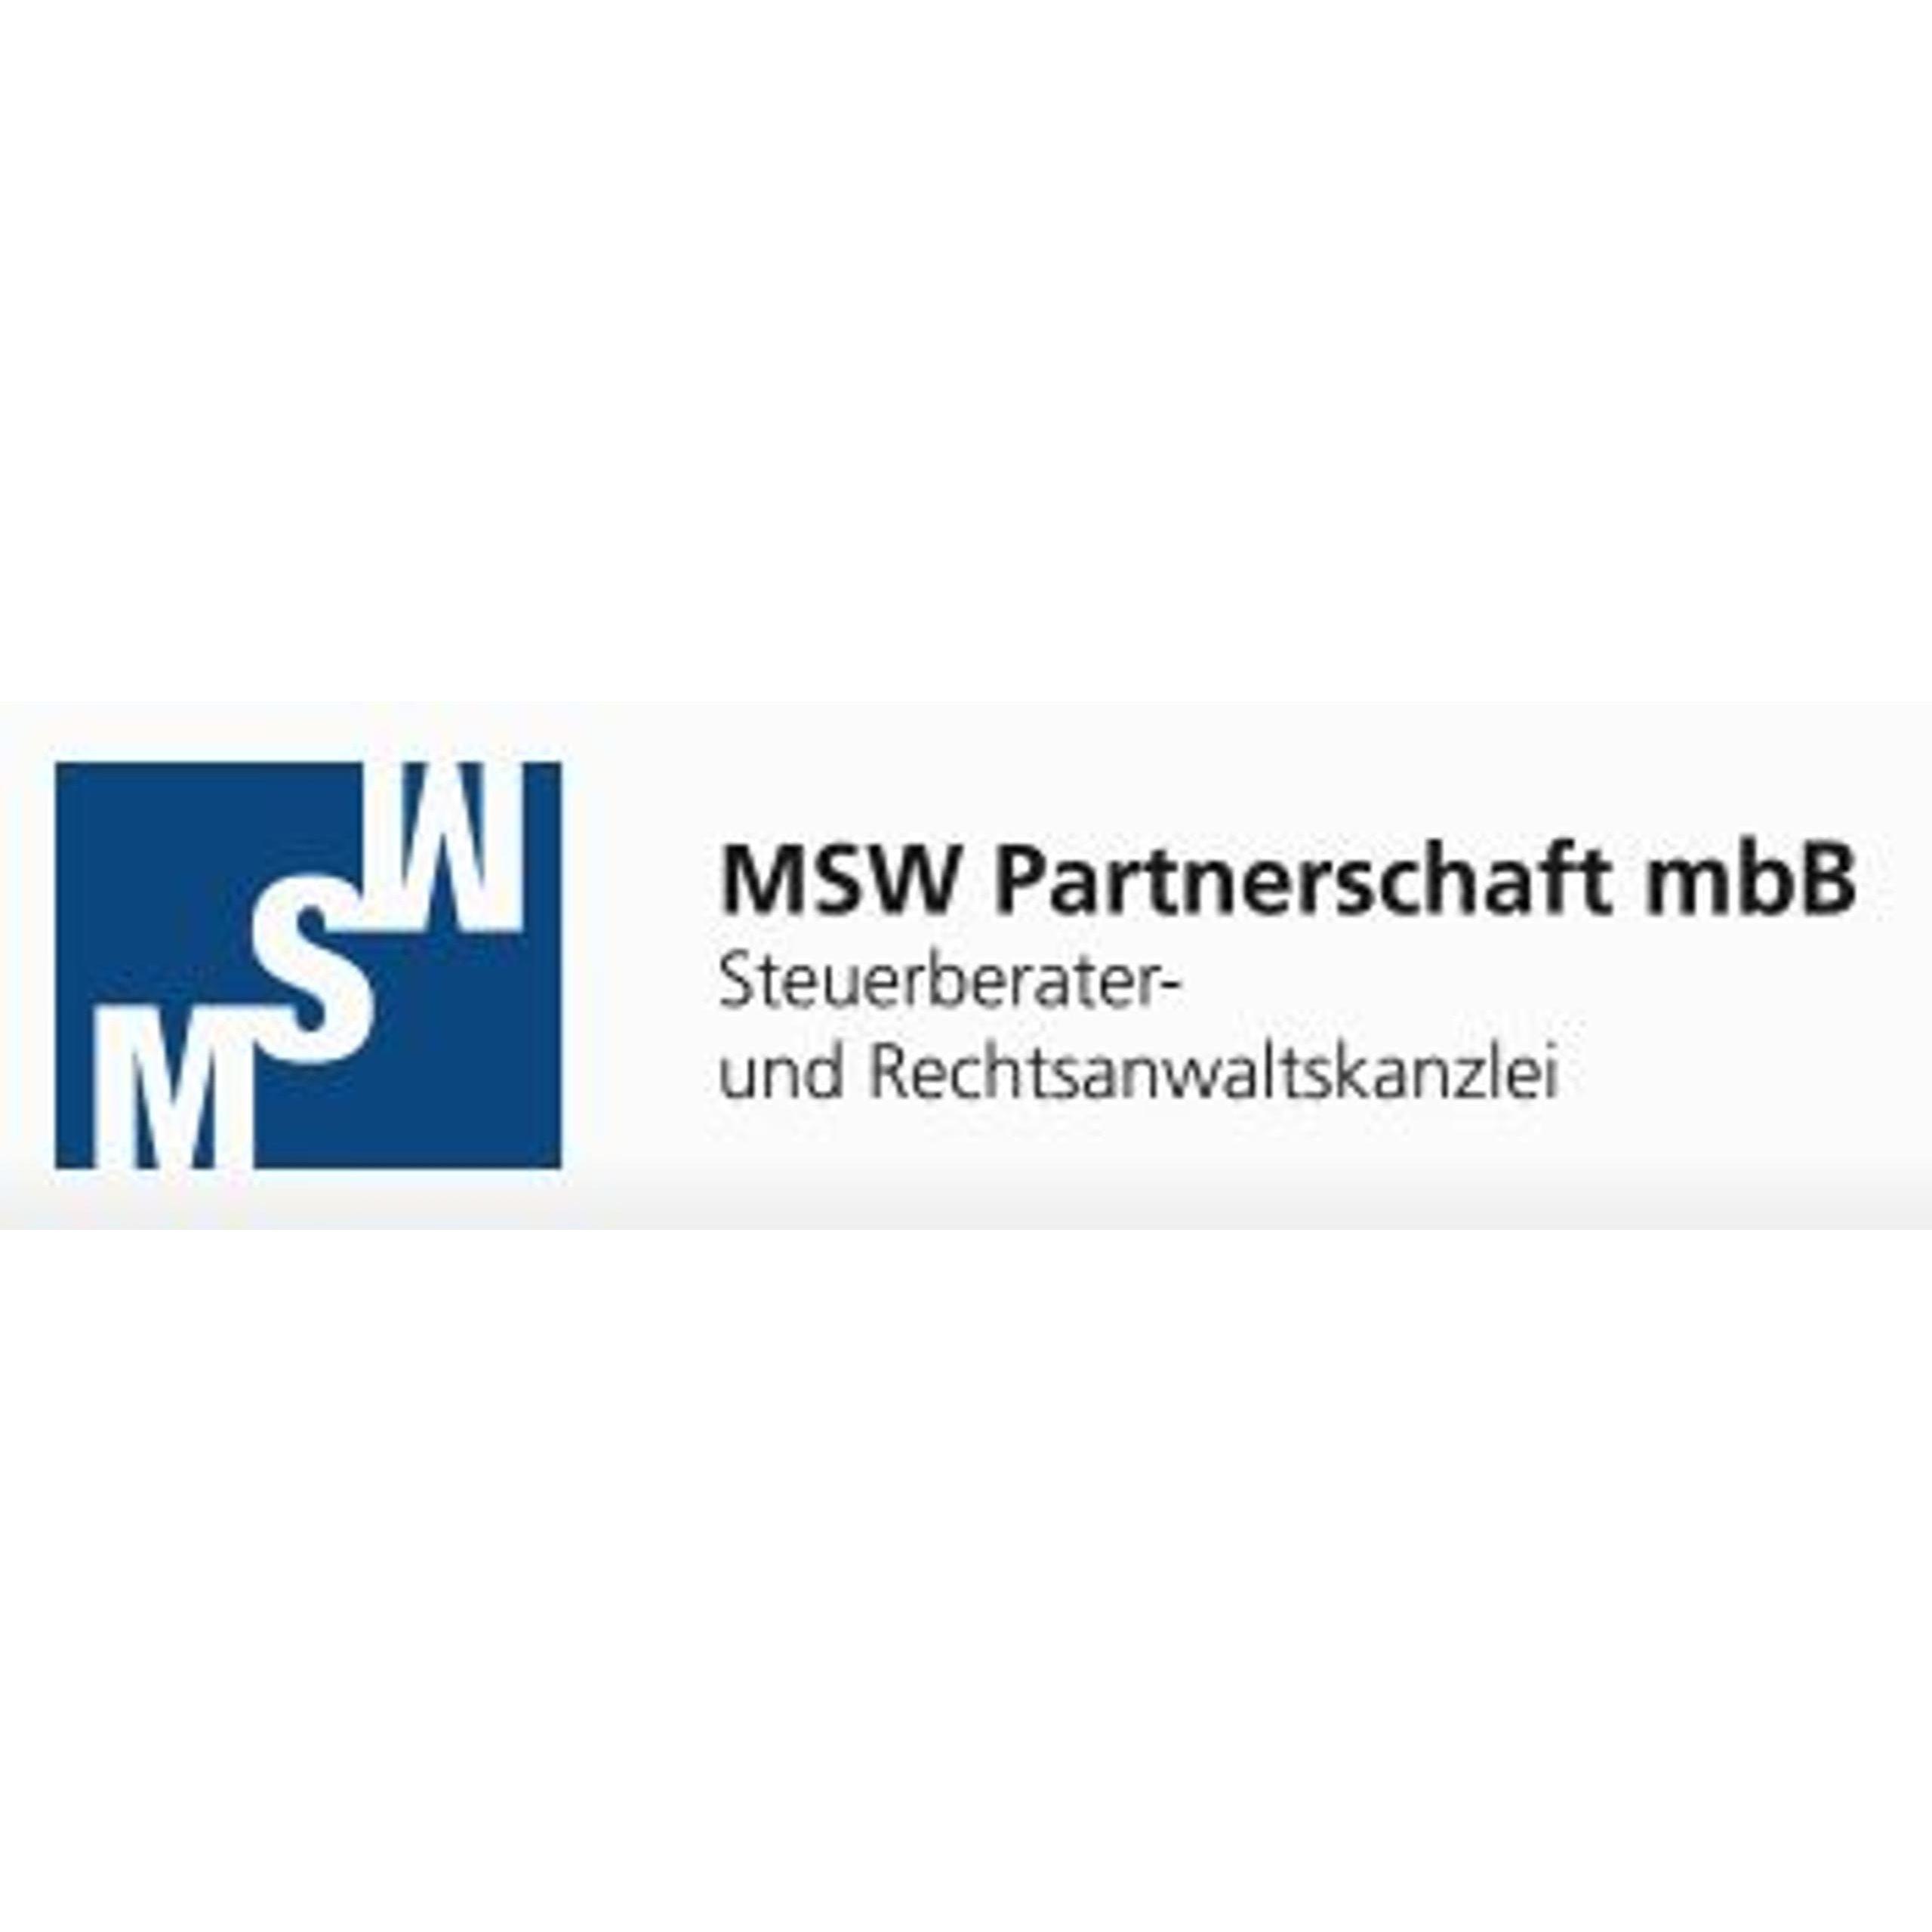 MSW Partnerschaft mbB Steuerberater- und Rechtsanwaltskanzlei Logo